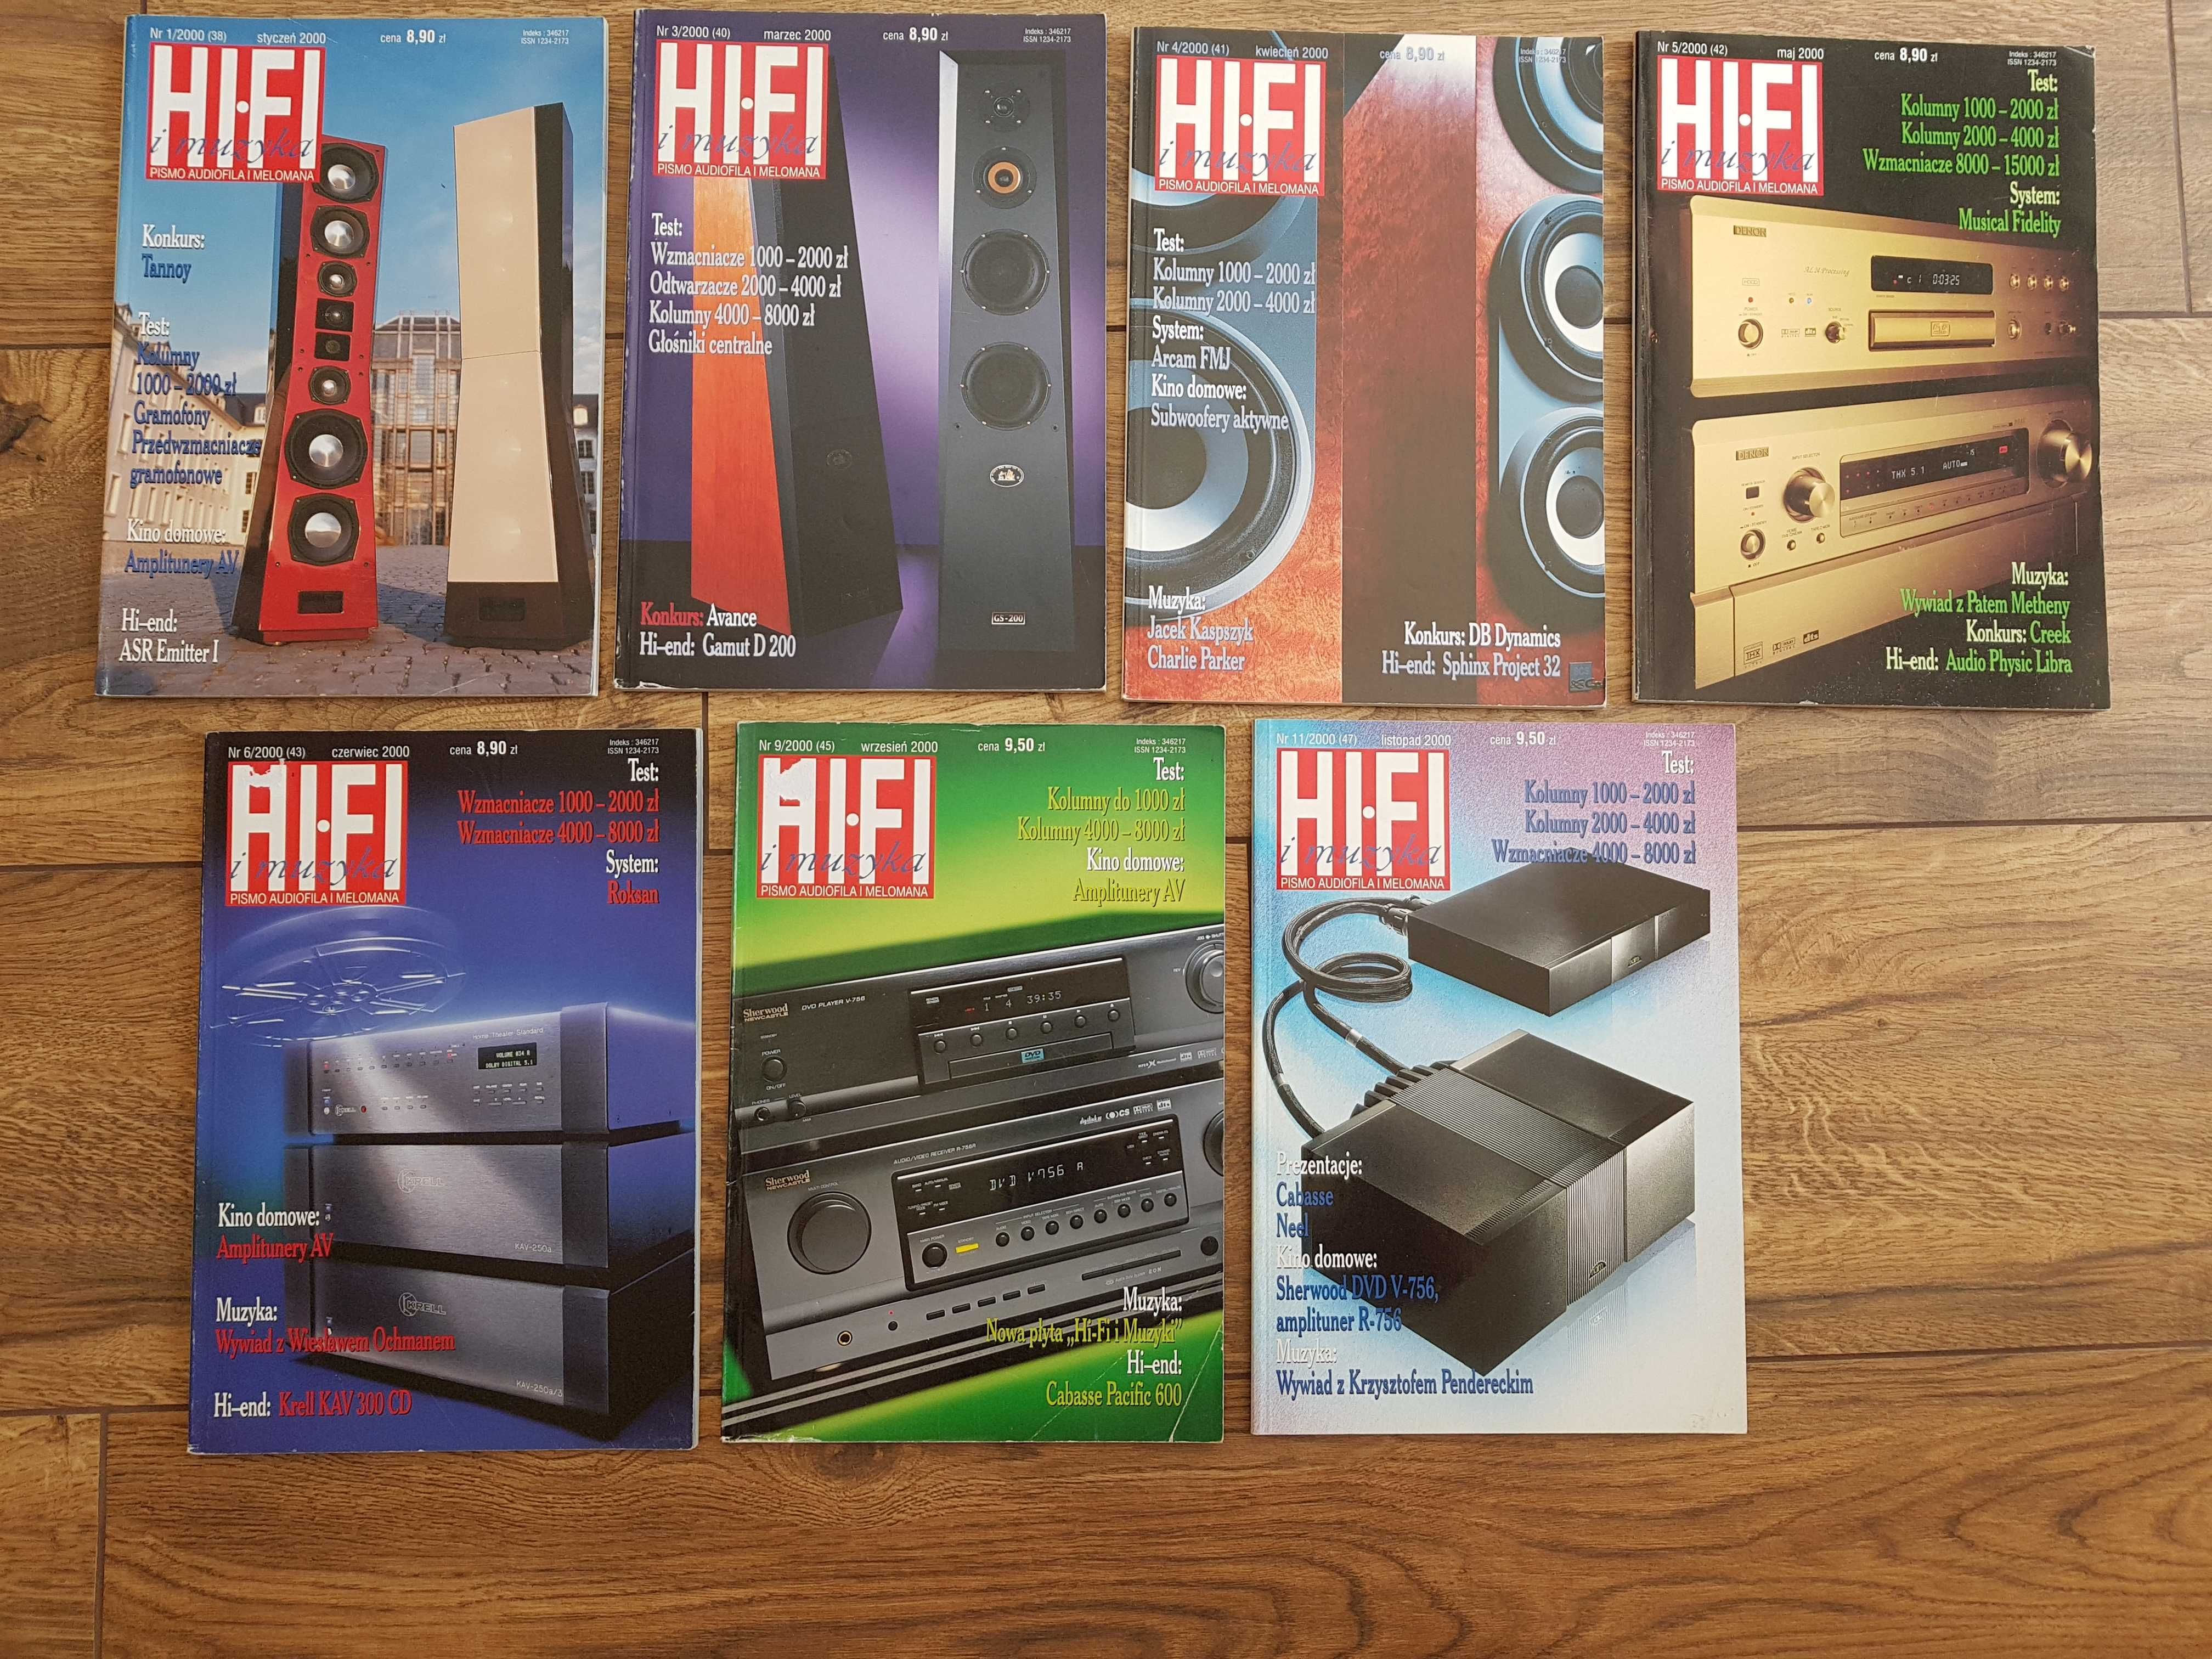 7 czasopism: Hi Fi i muzyka - pismo audiofila i melomana, rocznik 2000